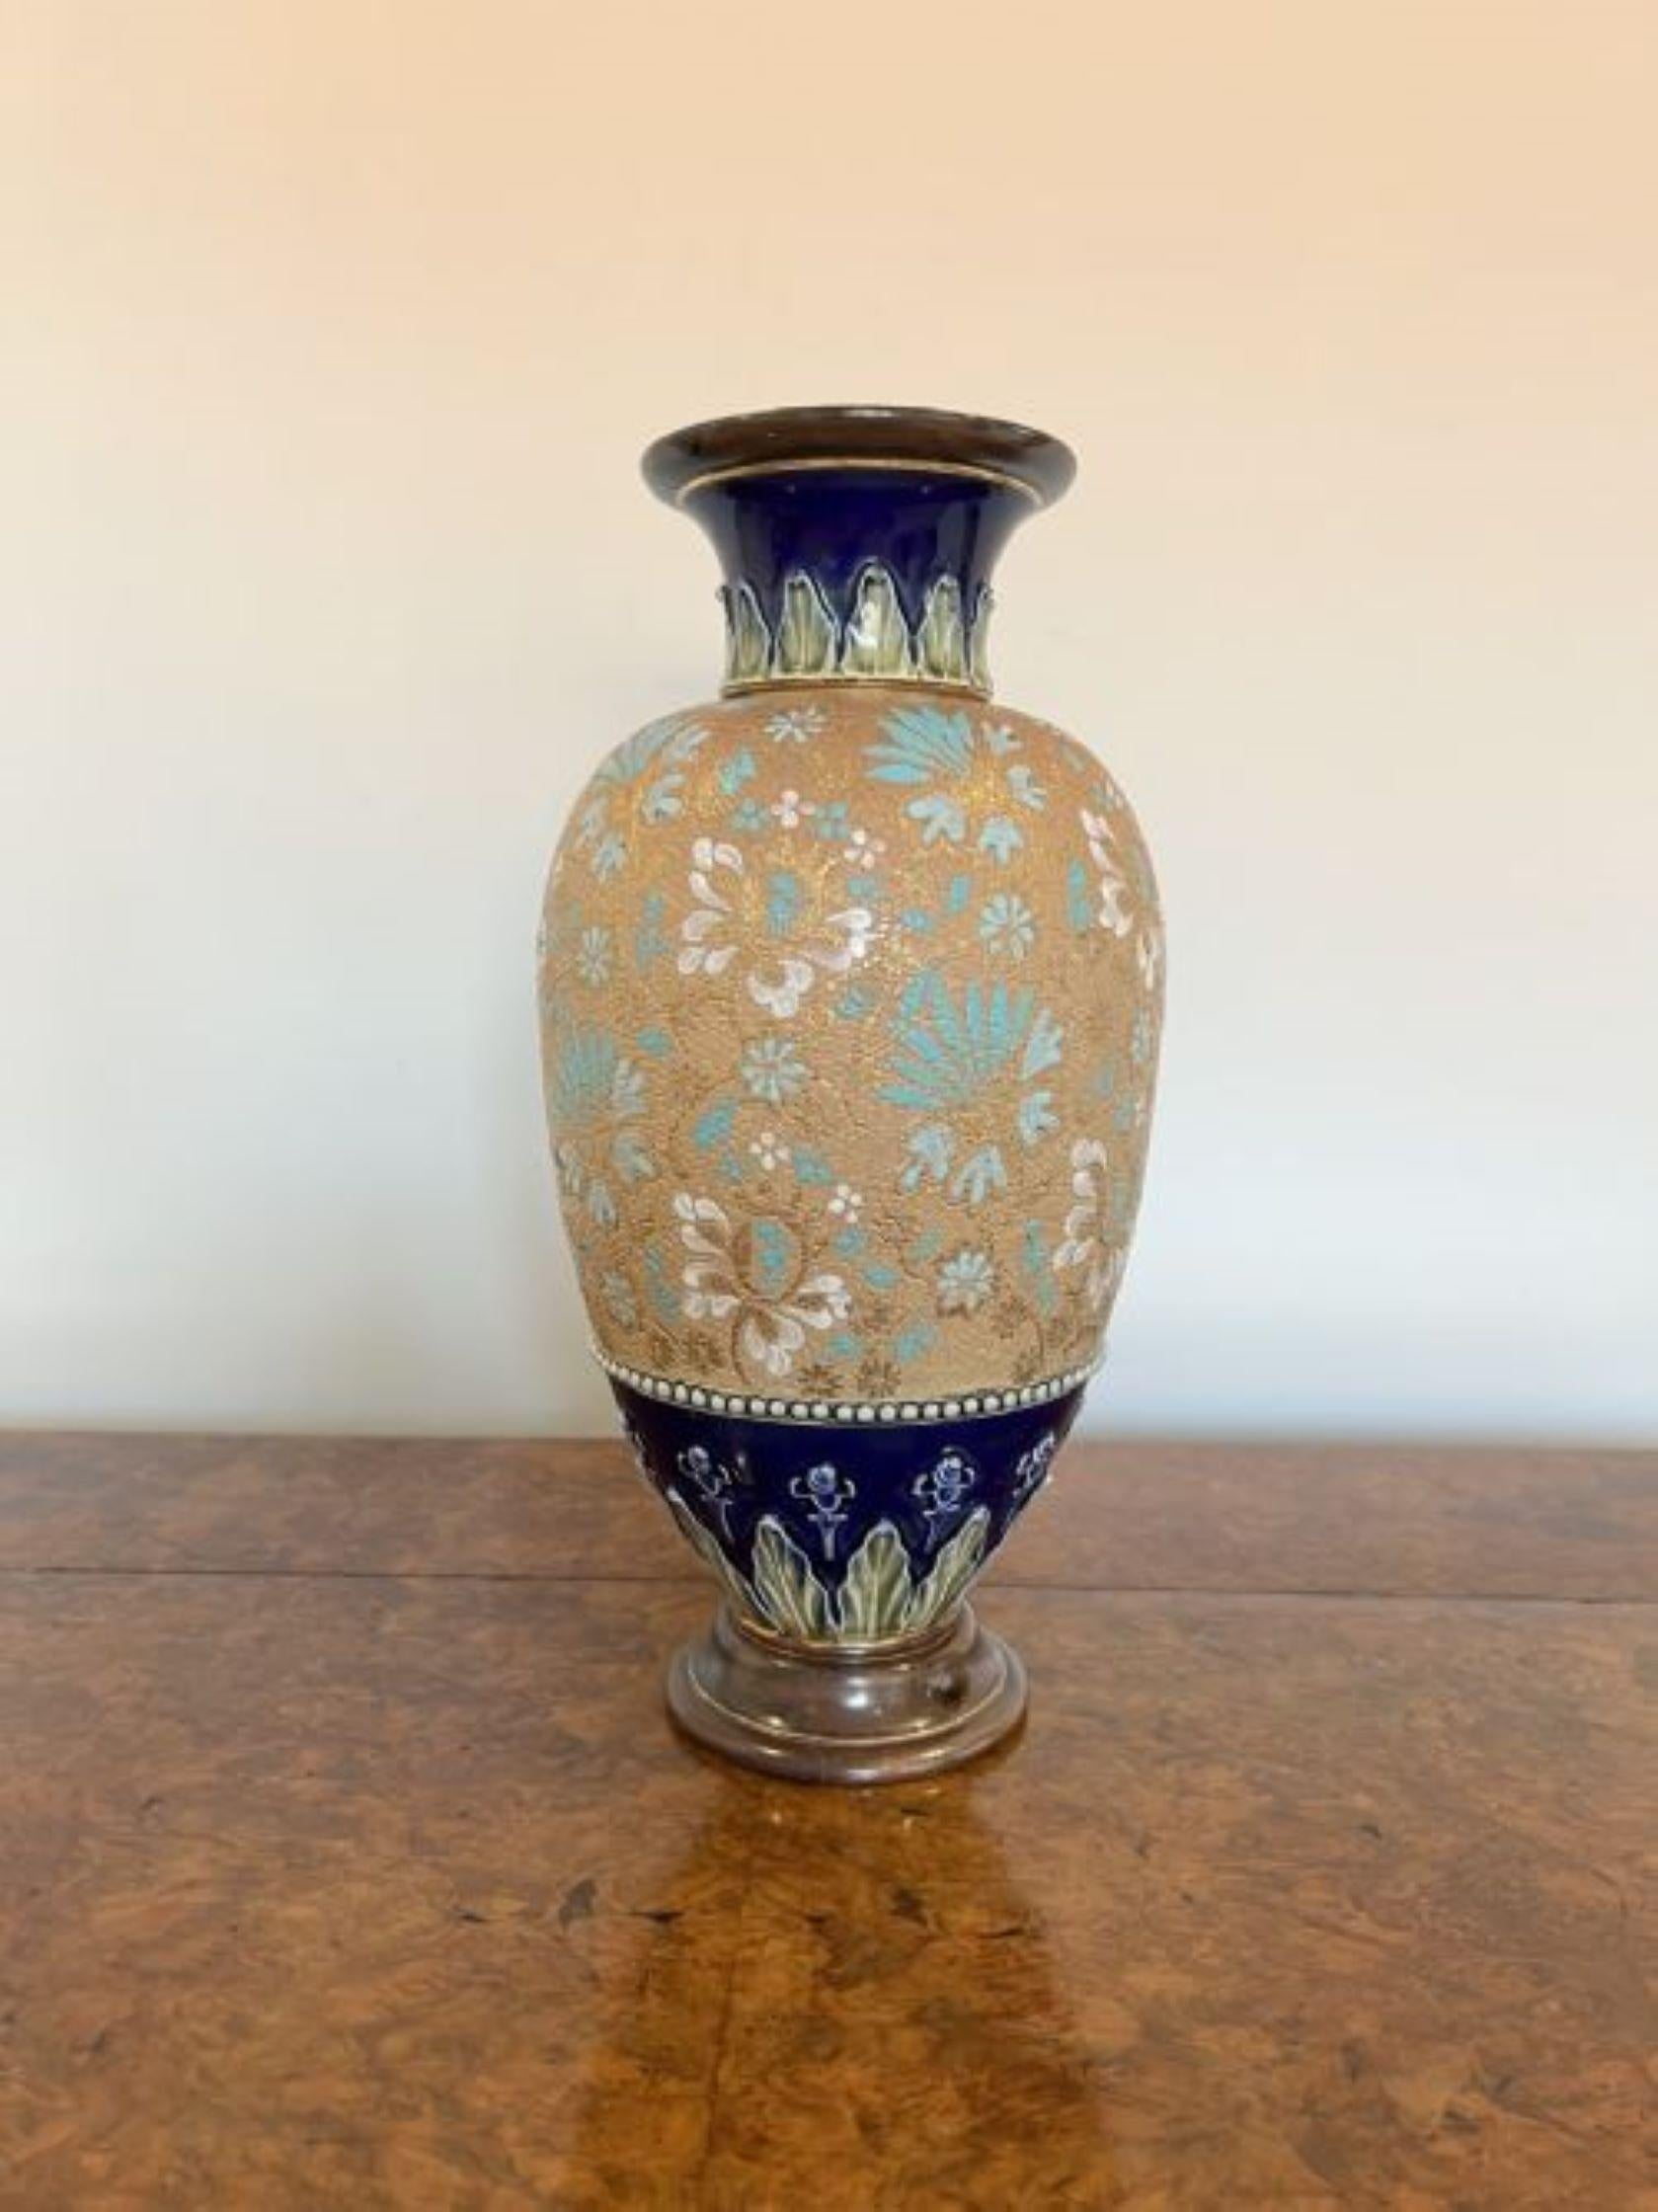 Beeindruckende antike viktorianische Doulton-Vase mit einer beeindruckenden antiken viktorianischen Doulton-Vase mit blauen und weißen Blumen auf einem goldenen Grund zusammen mit Akanthusblatt Dekoration auf den Hals und Körper, mit eingeprägten